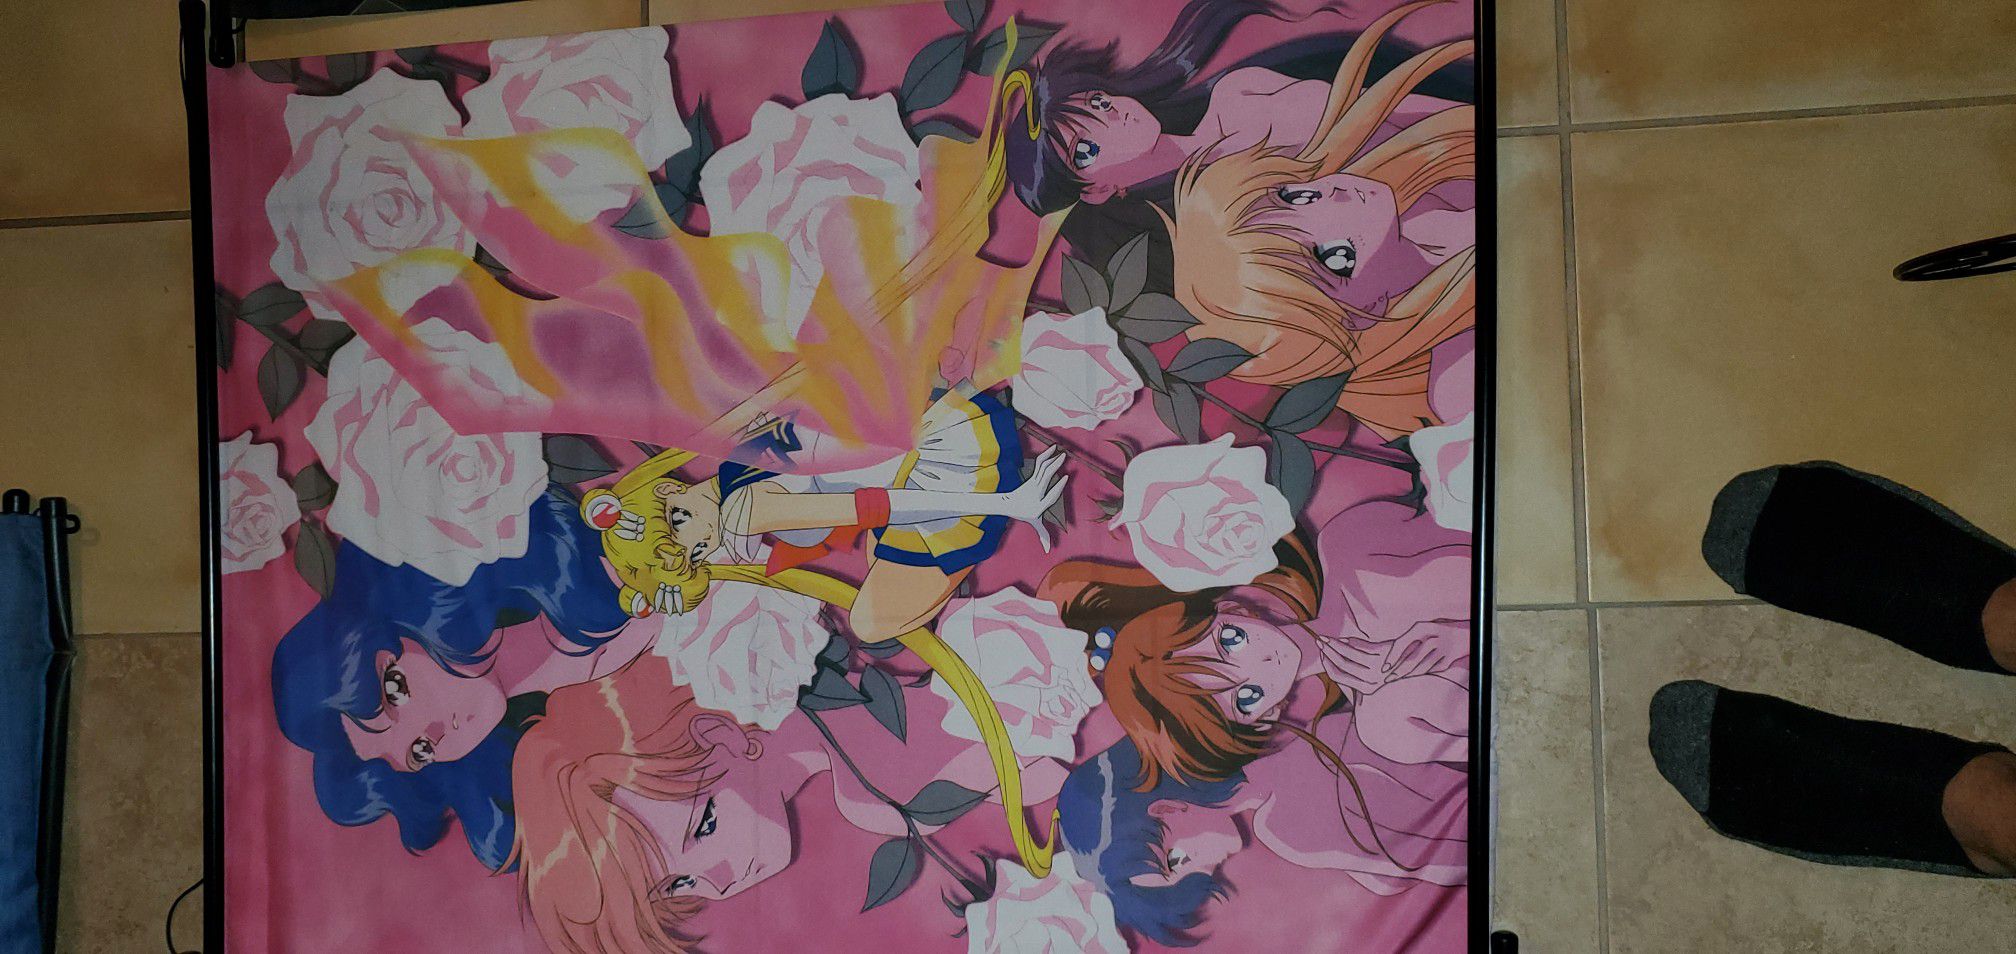 Anime Drops! Sailor Moon as well!